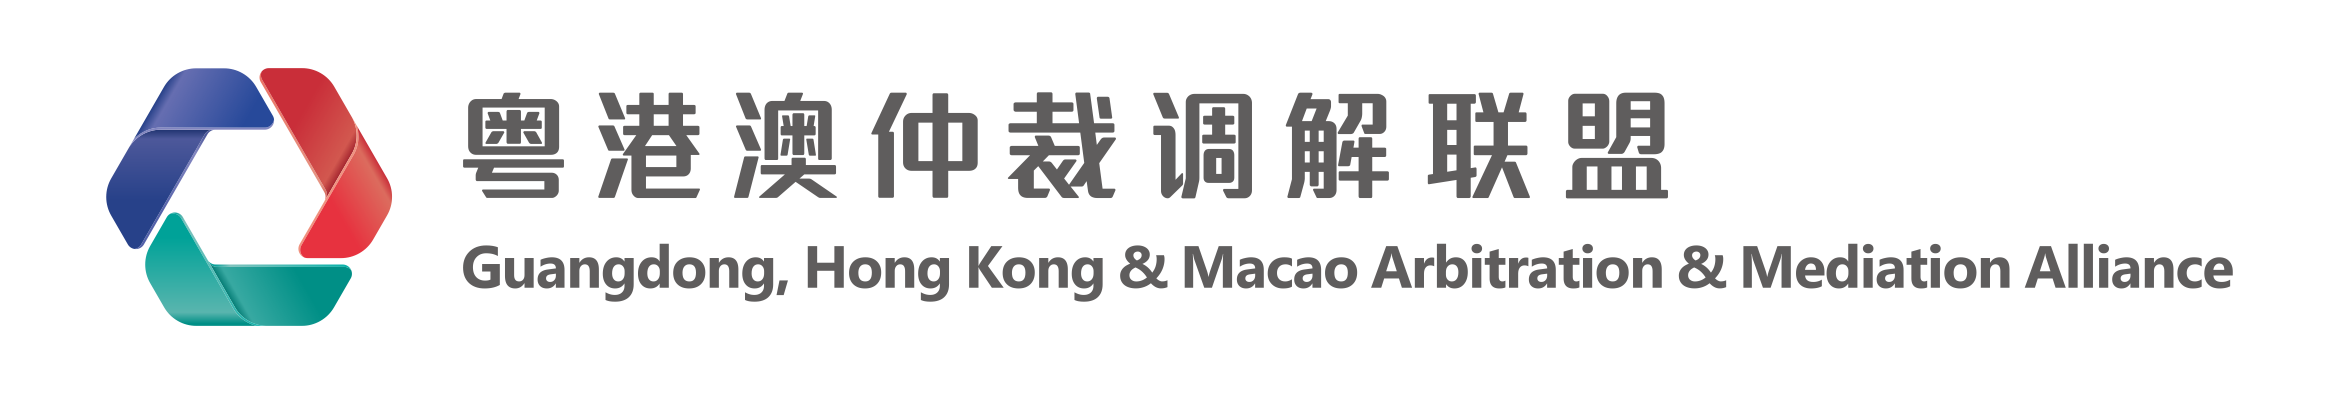 Guangdong, Hong Kong & Macao Arbitration & Mediation Alliance